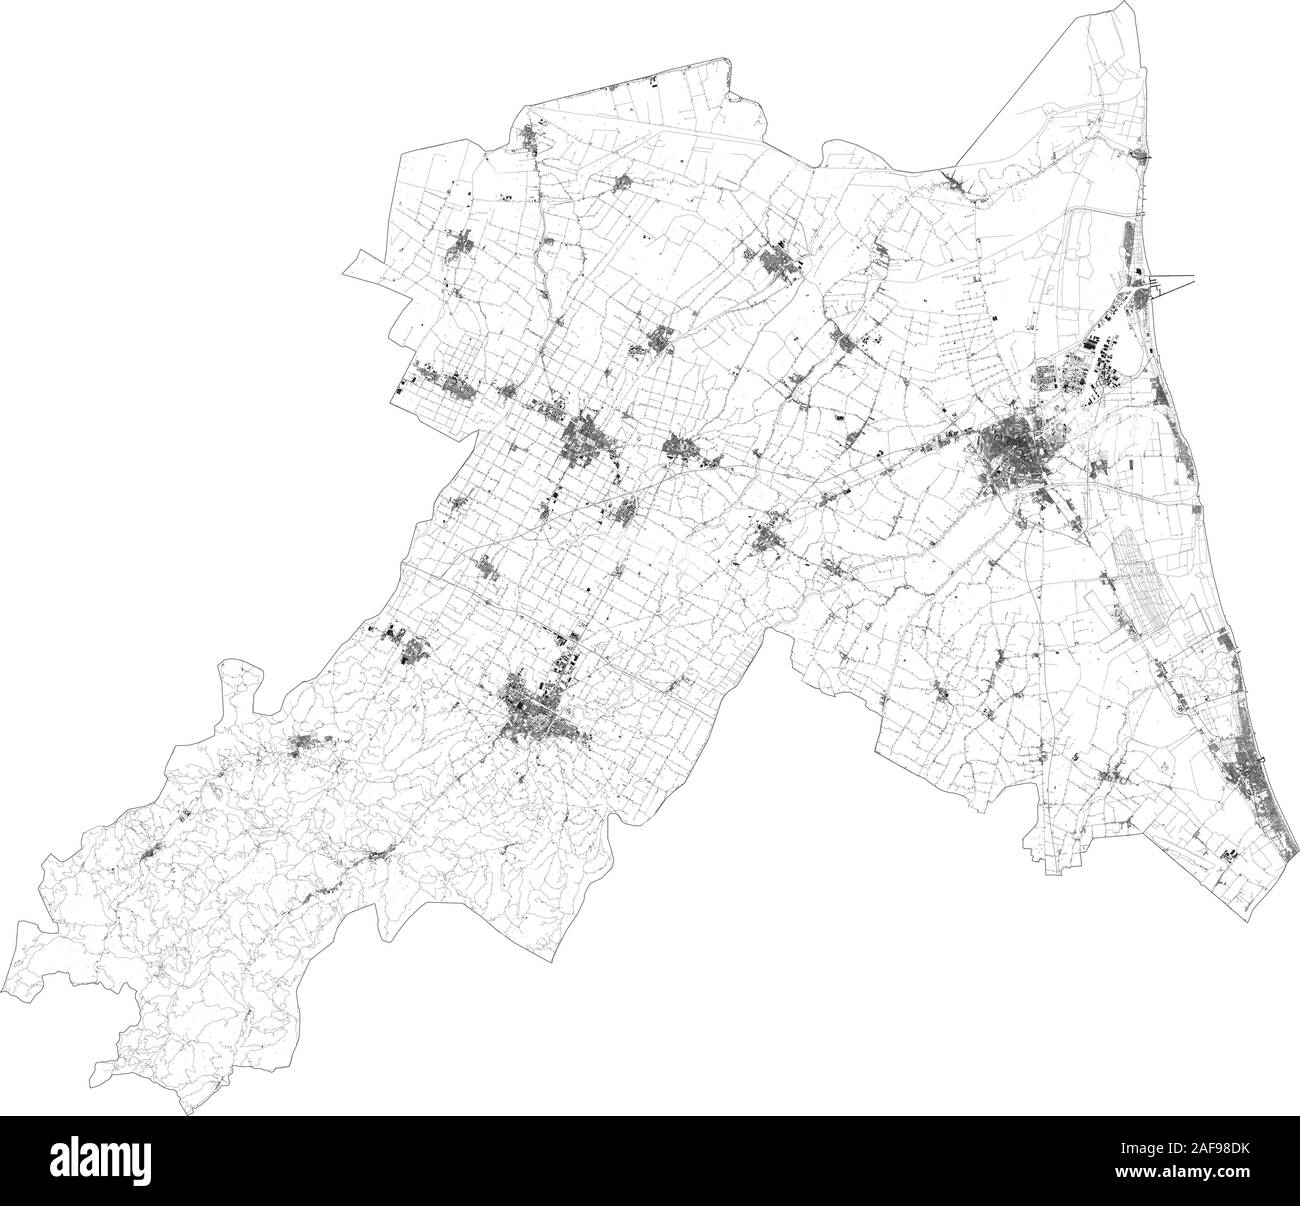 Mappa satellitare della provincia di Ravenna città e strade, edifici e strade di collegamento delle aree circostanti. Regione Emilia Romagna, Italia. Mappa strade Illustrazione Vettoriale